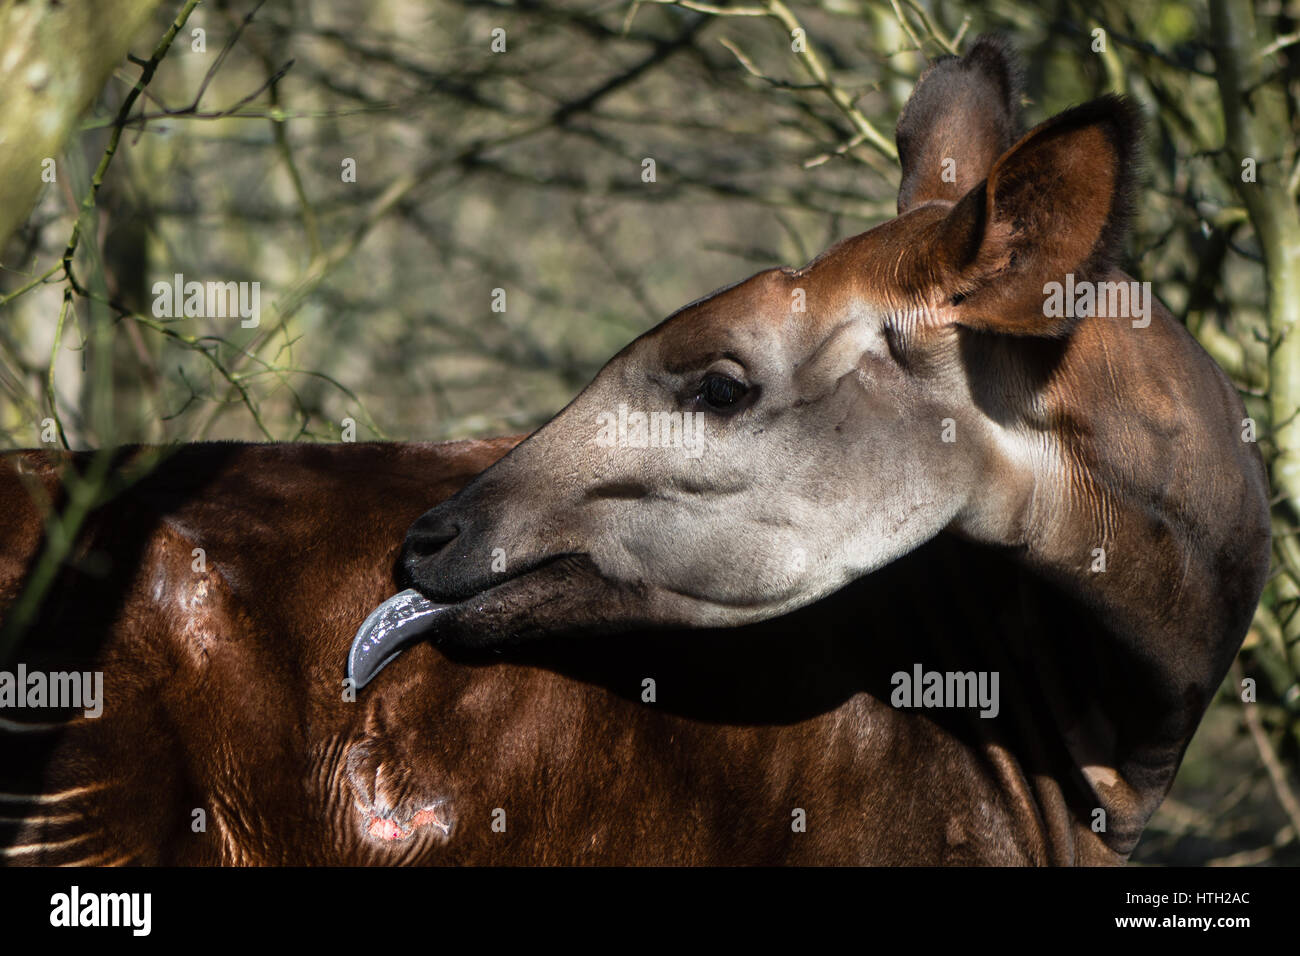 L'Okapi (Okapia johnstoni) avec langue étendu. Giraffid mammifère artiodactyle originaire d'Afrique centrale, le toilettage avec fourrure longue langue bleue Banque D'Images